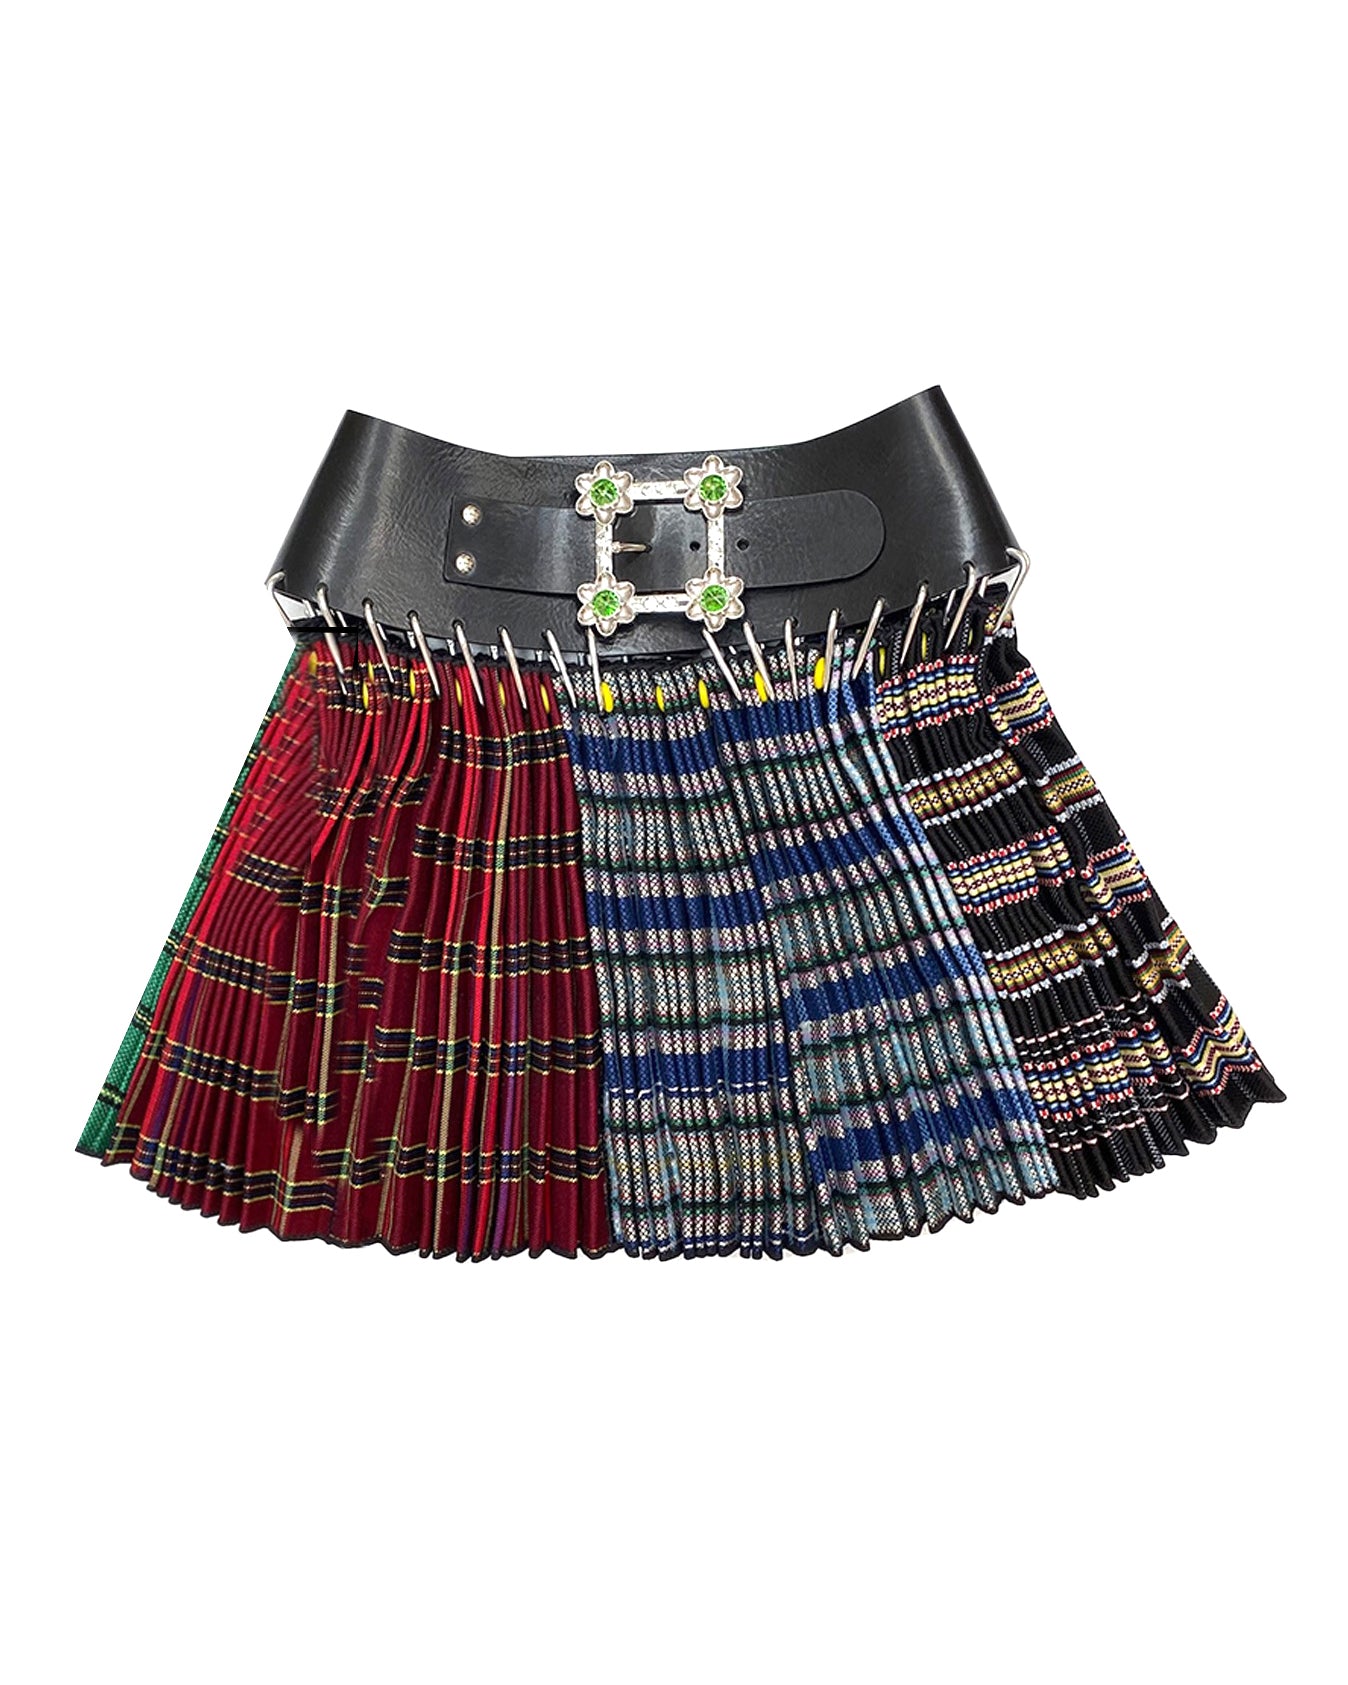 Elder Carabiner Mini Skirt